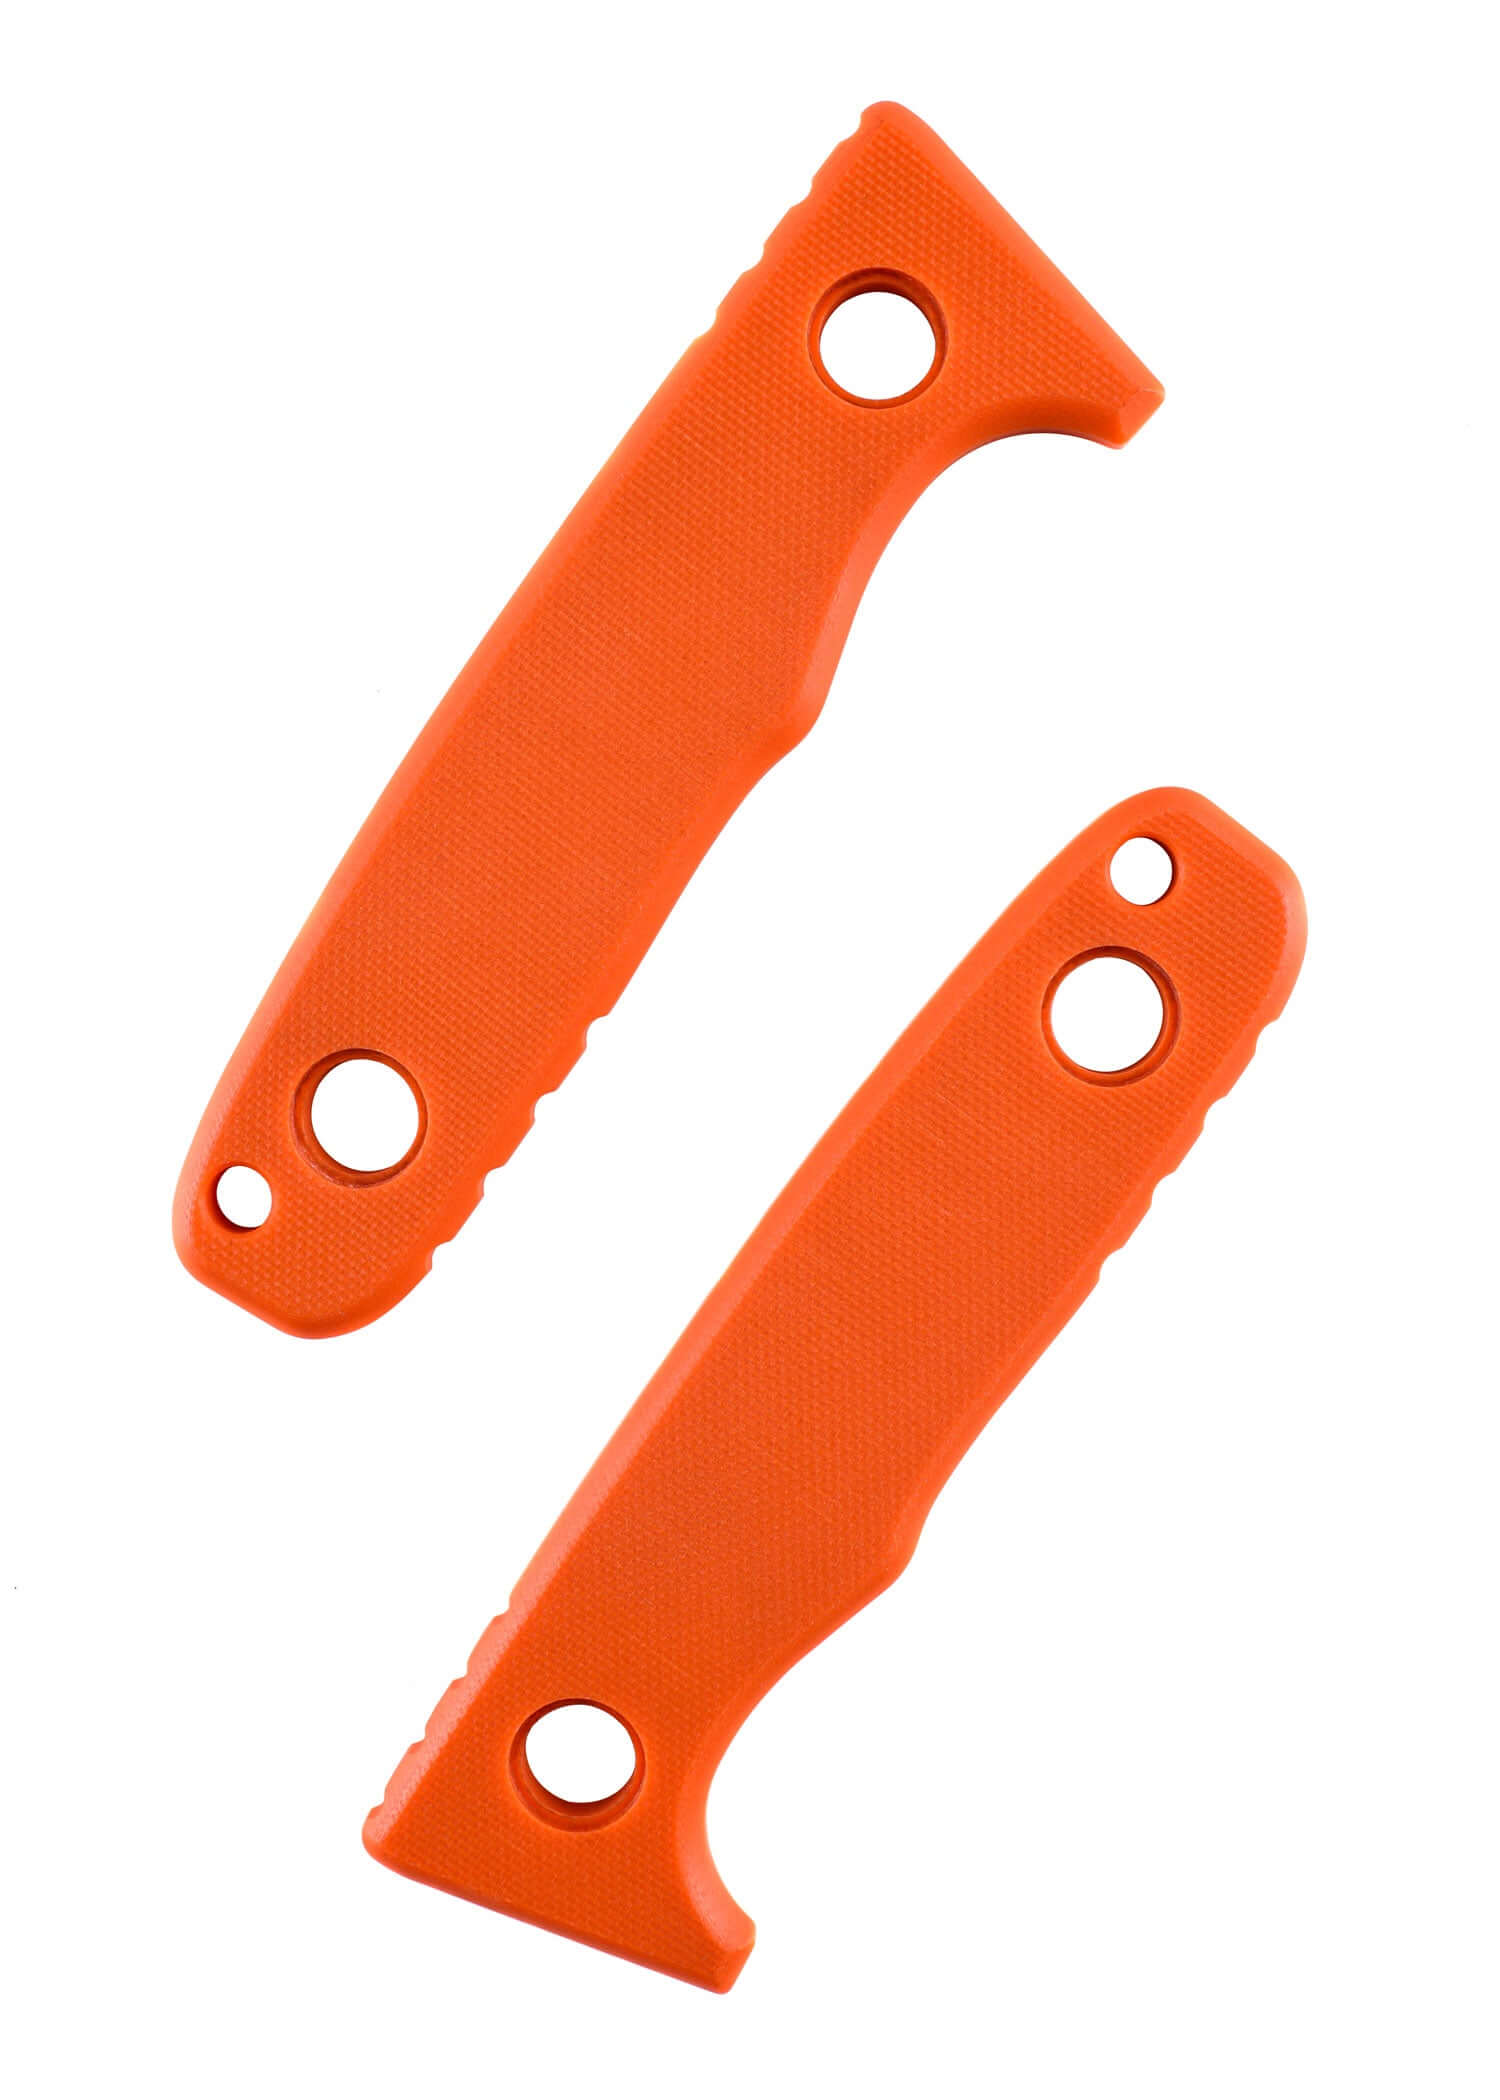 Eine linke und rechte Griffschale eines Schnitzel TRI Messers in Orange